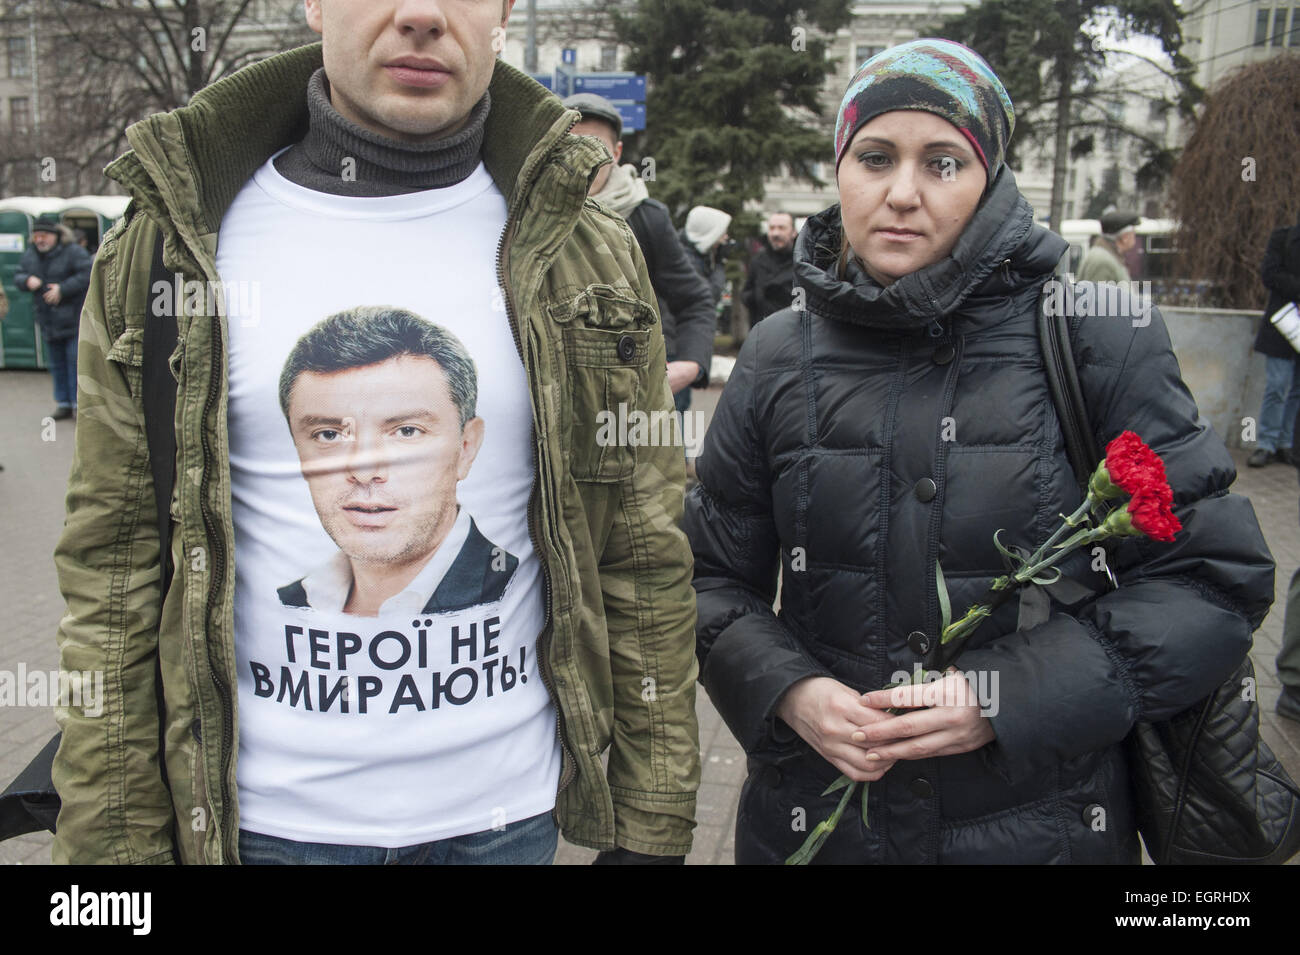 Mosca, Russia. 1 Mar, 2015. Un uomo che indossa una maglietta raffigurante l'immagine del Russo leader dell opposizione Boris Nemtsov con il testo in Ucraino ''Gli eroi non muoiono mai". Migliaia di persone hanno marciato nel centro di Mosca a onore politico di opposizione Boris Nemtsov, che è stato ucciso il venerdì. Hanno realizzato i ritratti del signor Nemtsov e banner dicendo "Non ho paura". Egli avrebbe dovuto condurre ad una opposizione marzo domenica ma la sua uccisione girato l'evento in un lutto rally. Signor Nemtsov's alleati hanno accusato il Cremlino di coinvolgimento, ma il Presidente Vladimir Putin ha condannato l'omicidio come 'Vile' Foto Stock